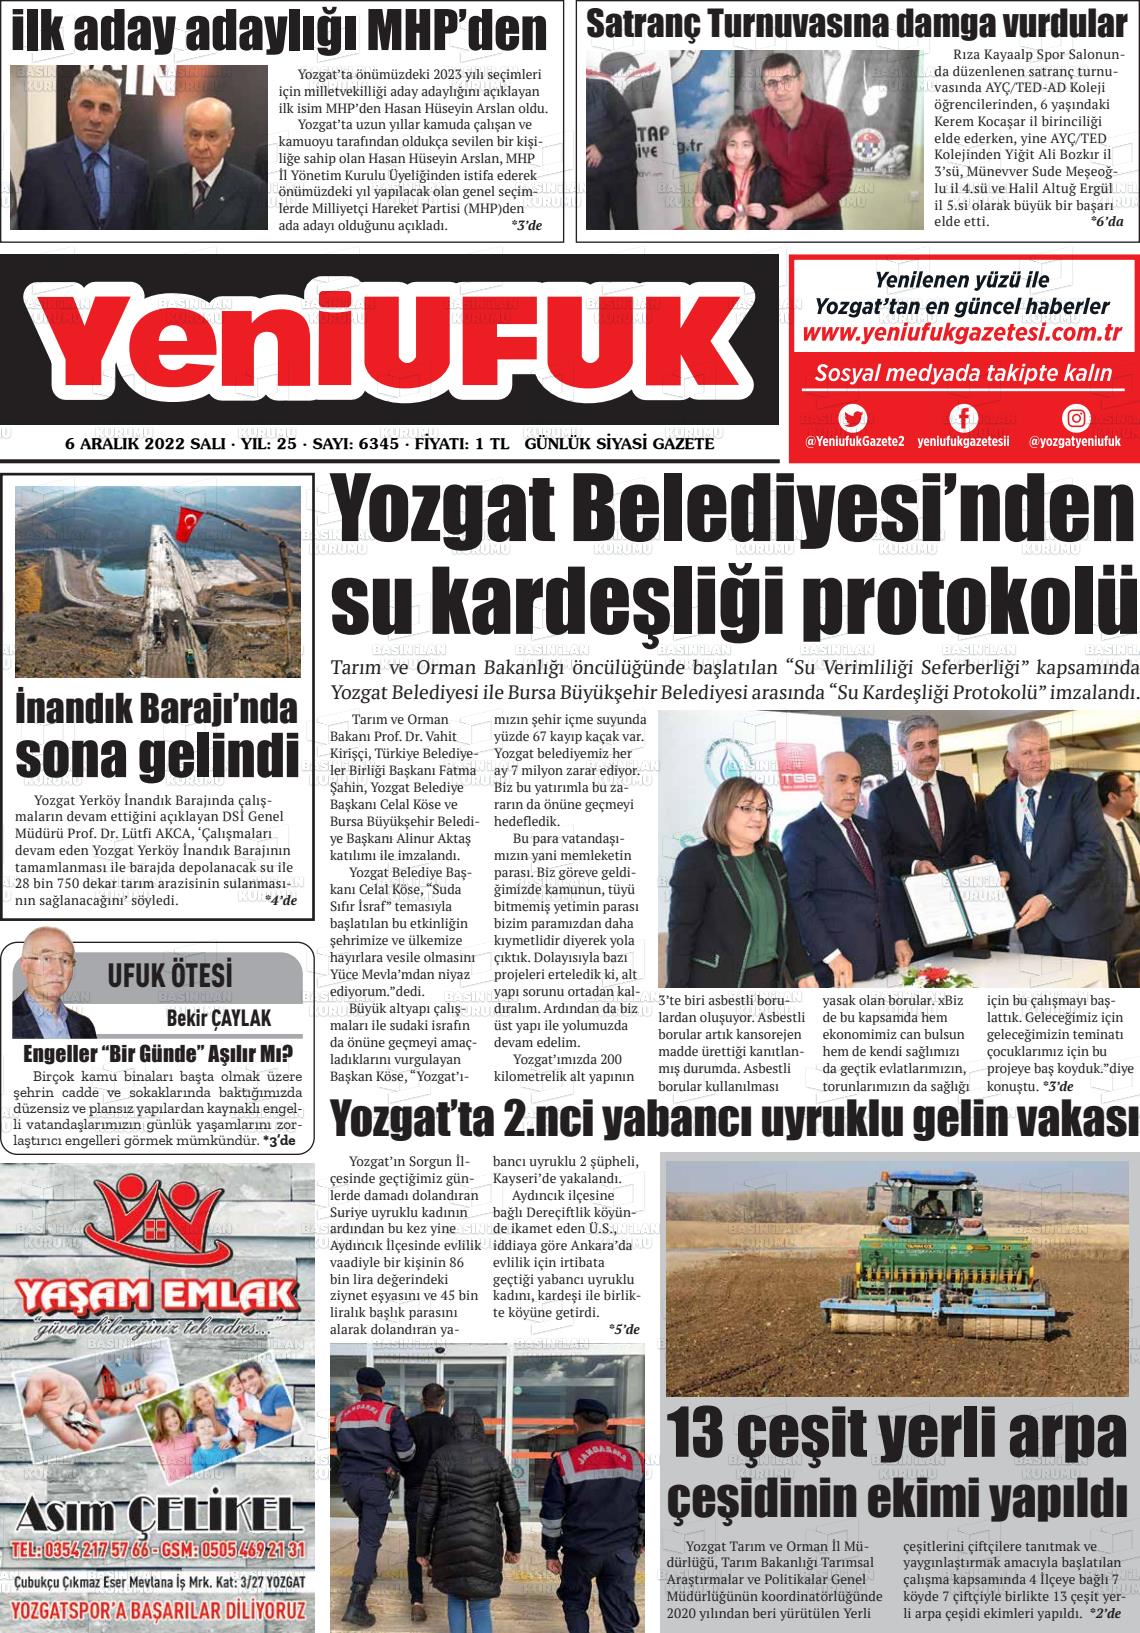 06 Aralık 2022 Yozgat Yeni Ufuk Gazete Manşeti